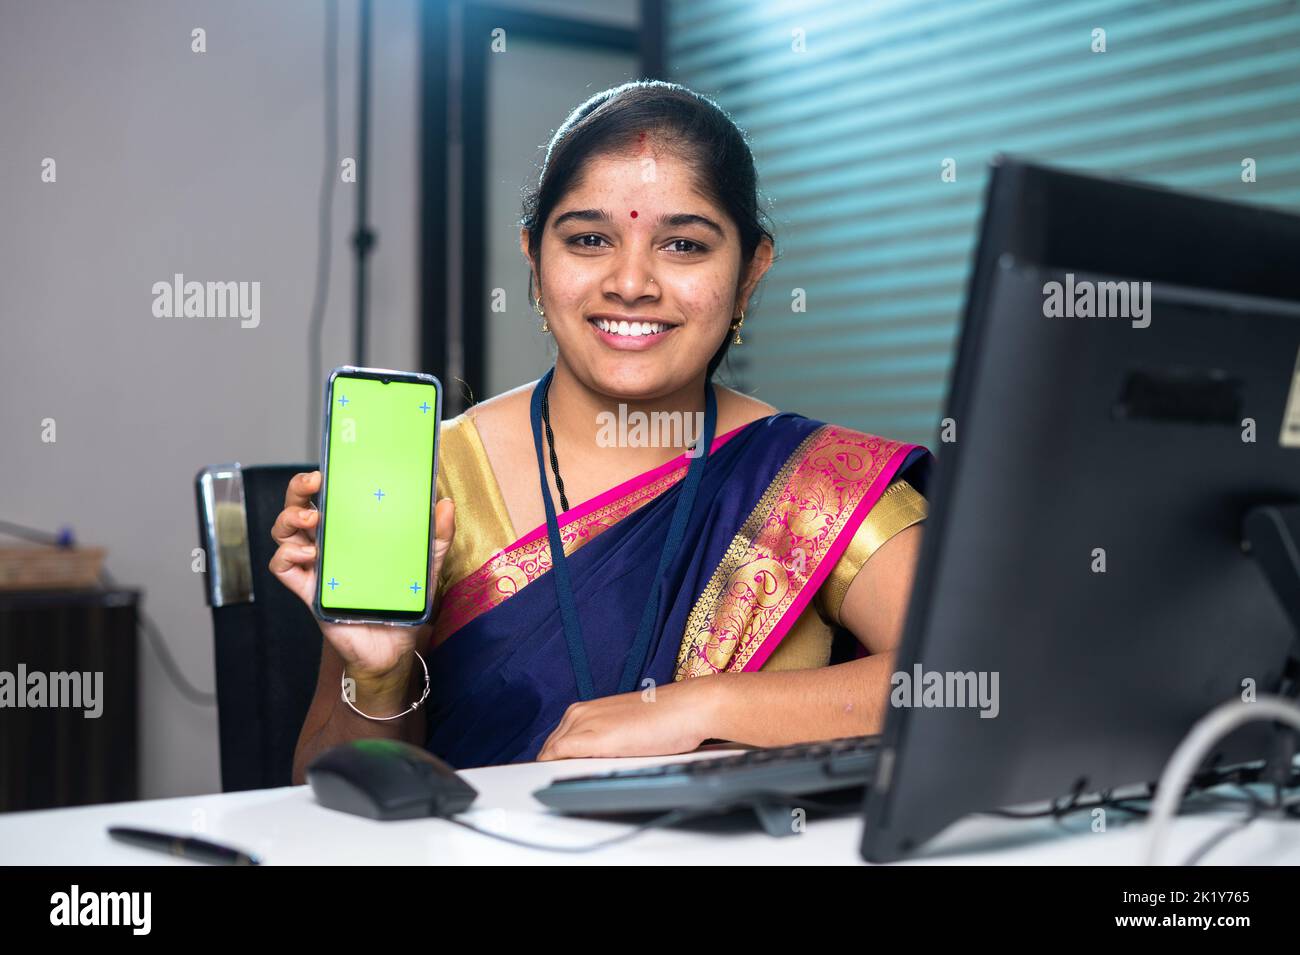 bankangestellter zeigt grünes Handy, indem er die Kamera-Bank am Schreibtisch betrachtet - Konzept der Finanzdienstleistungen, App-Werbung und Stockfoto